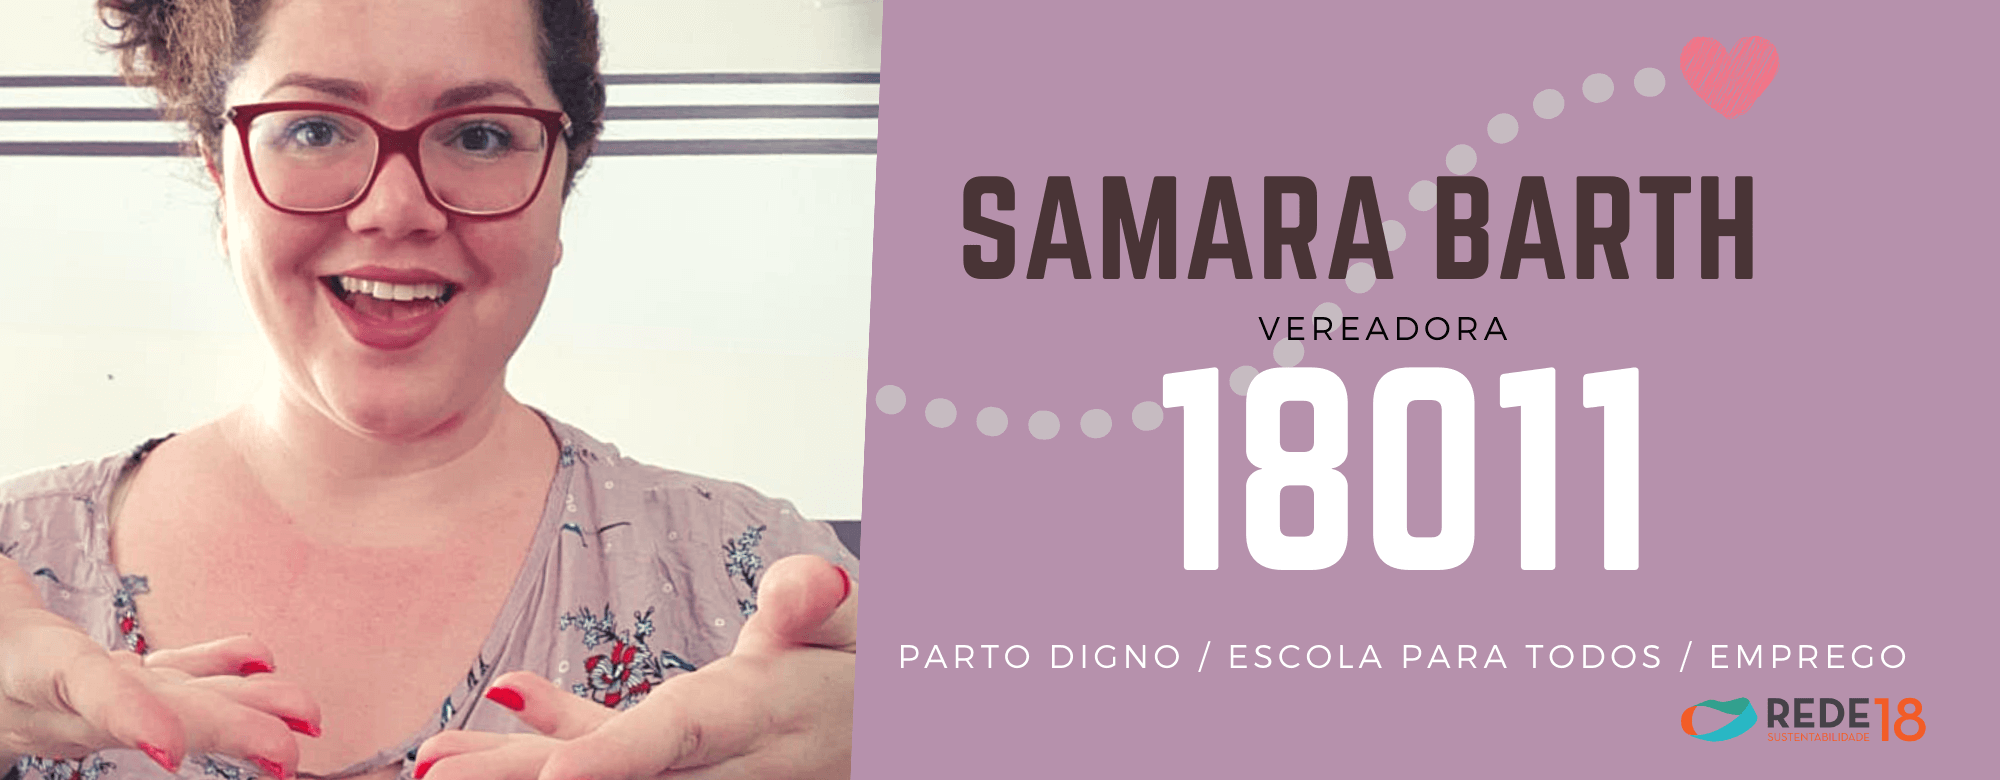 samara barth vereadora 18011